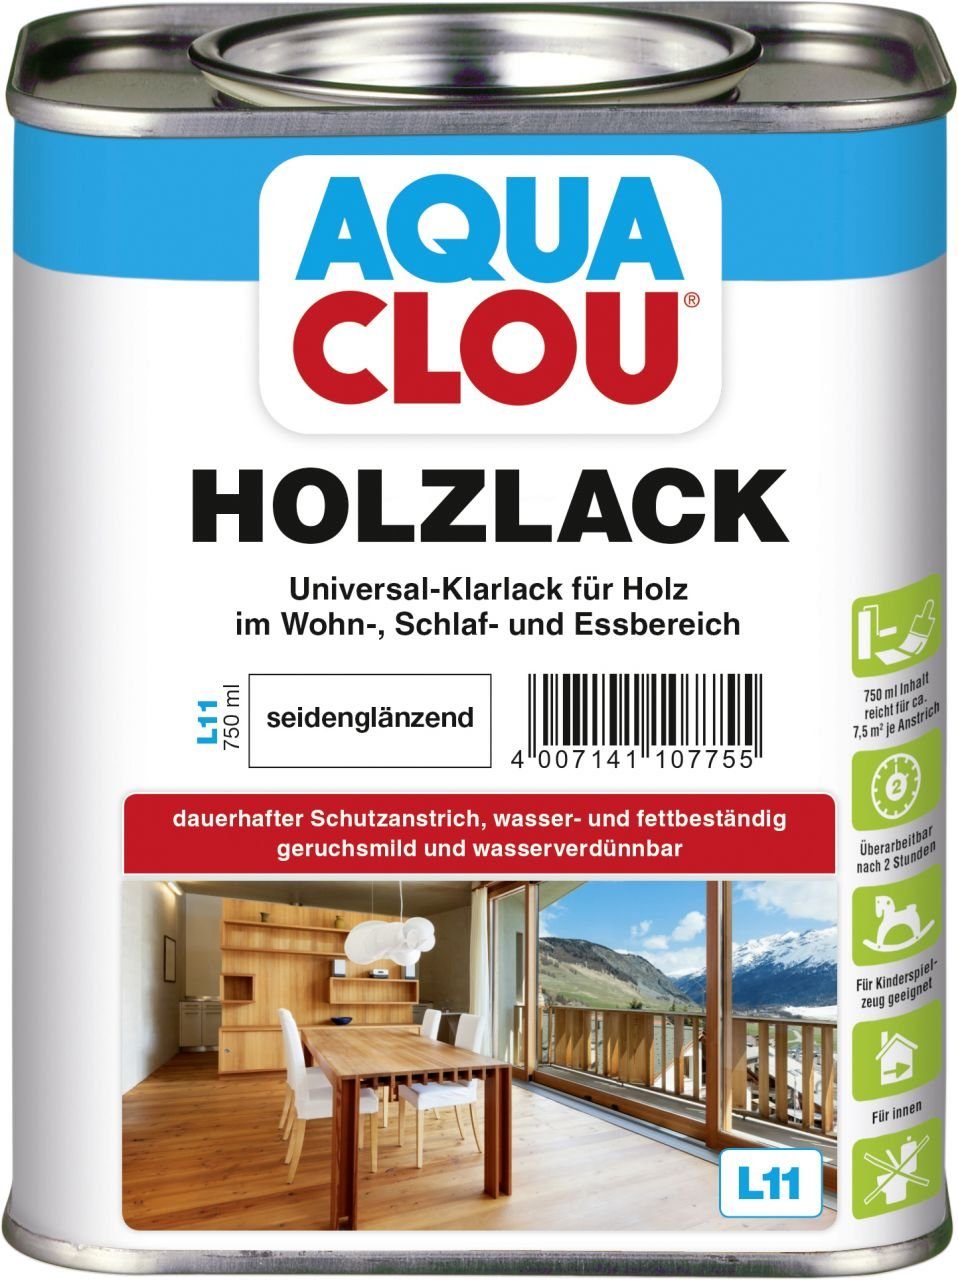 Aqua Clou Holzlack Aqua Clou Holzlack L11 750 ml seidenglänzend